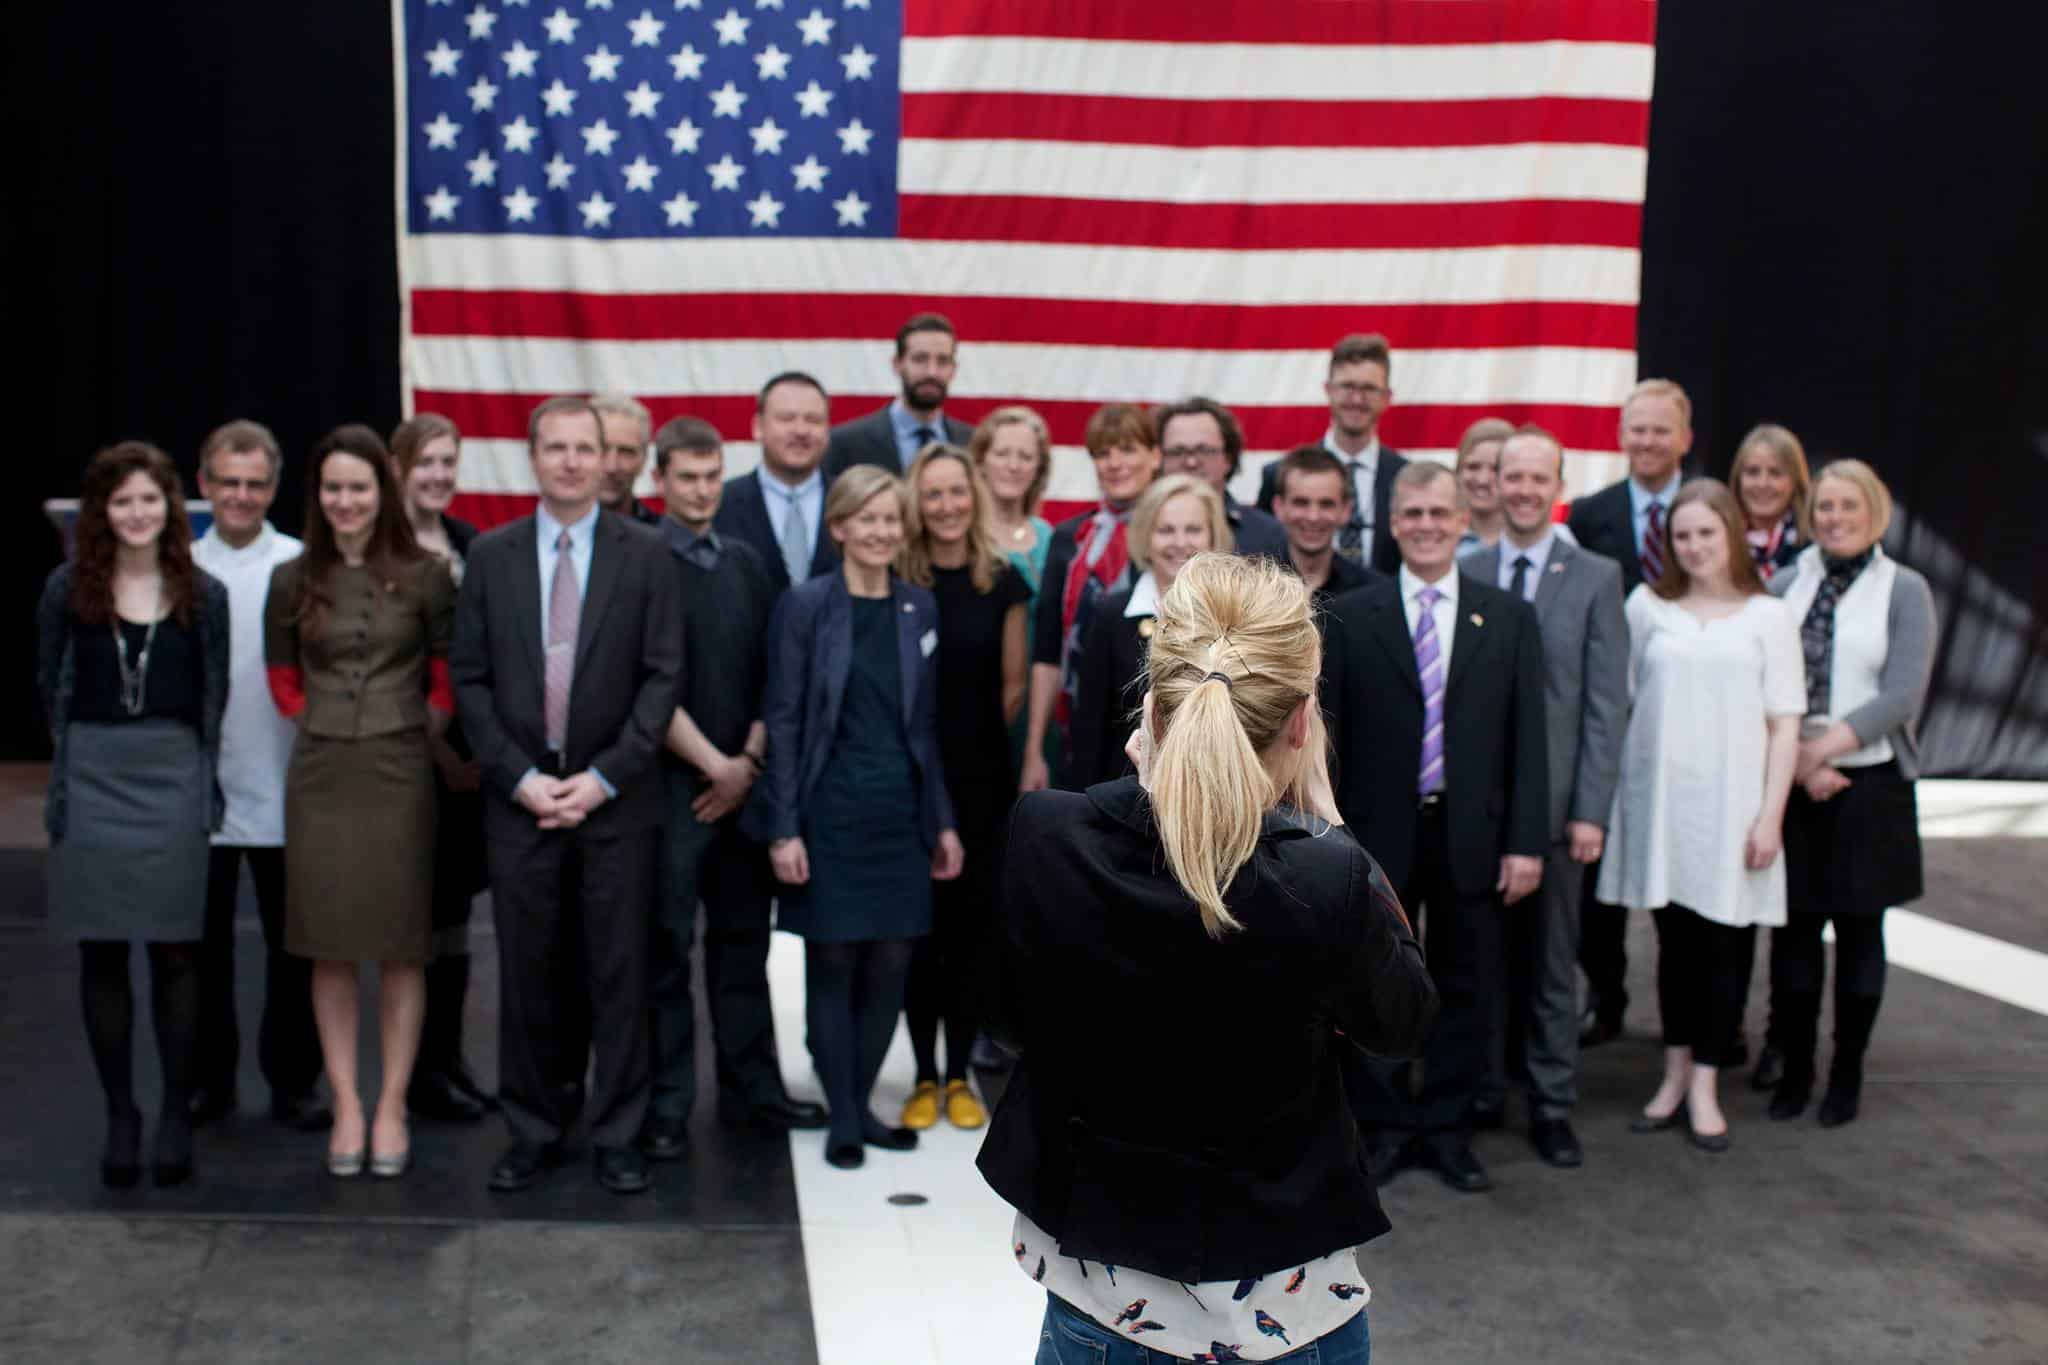 Gruppe fotografering, amerikanske ambassør, amerkianske ambassade i spinderihallerne